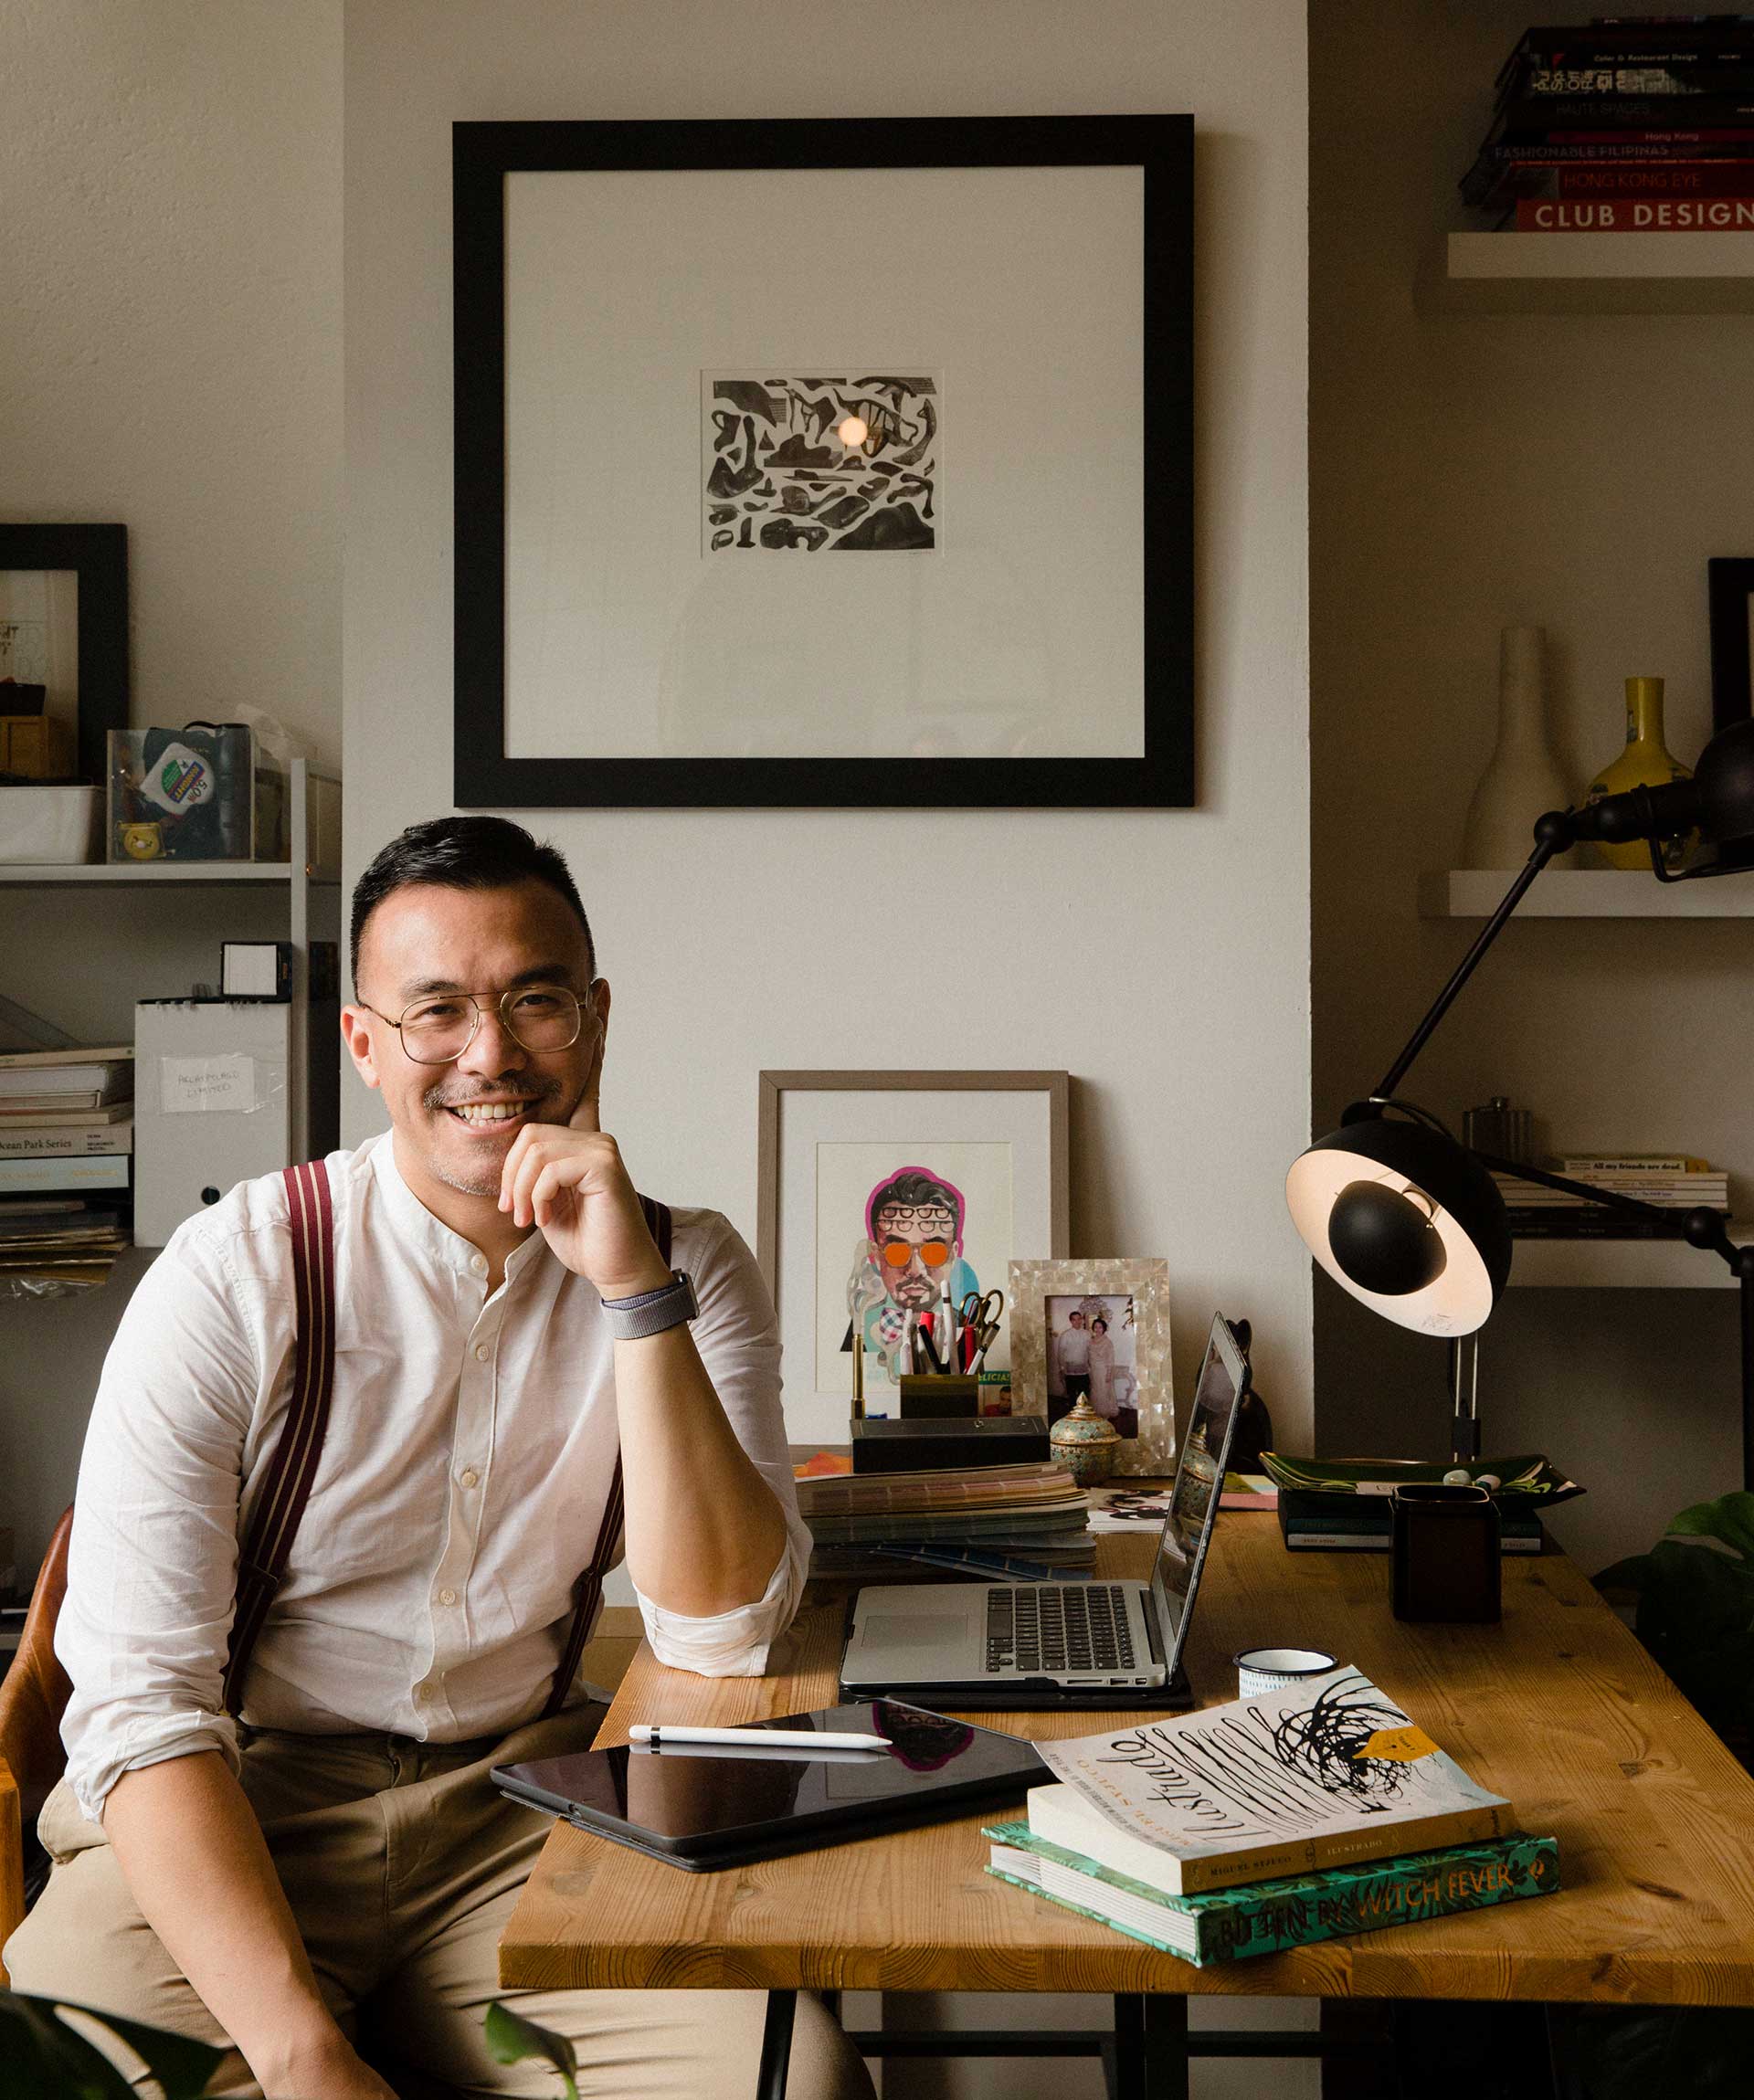 香港设计师兼博主JJ.Acuna在他的住宅兼工作室中留影。枱灯由&tradition提供